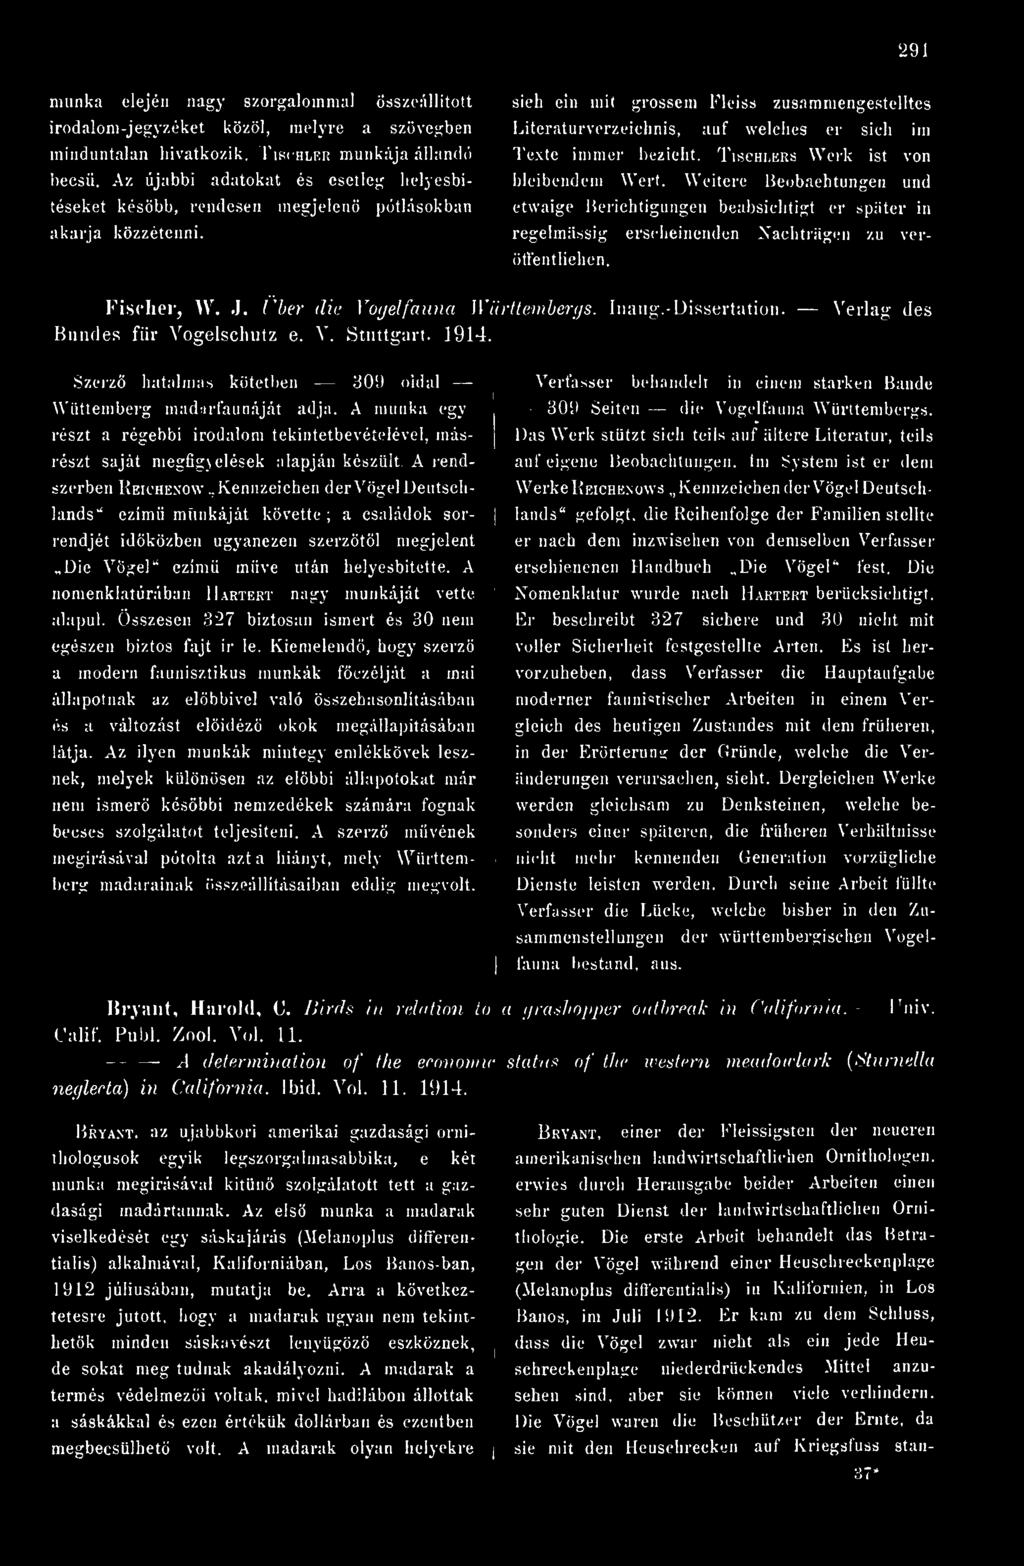 -Dissertation. Verlag des Bundes für Vogelschutz e. V. Stuttgart. 1914. Szerz hatalmas kötetben 309 oidal Wüttemberg madárfaunáját adja.